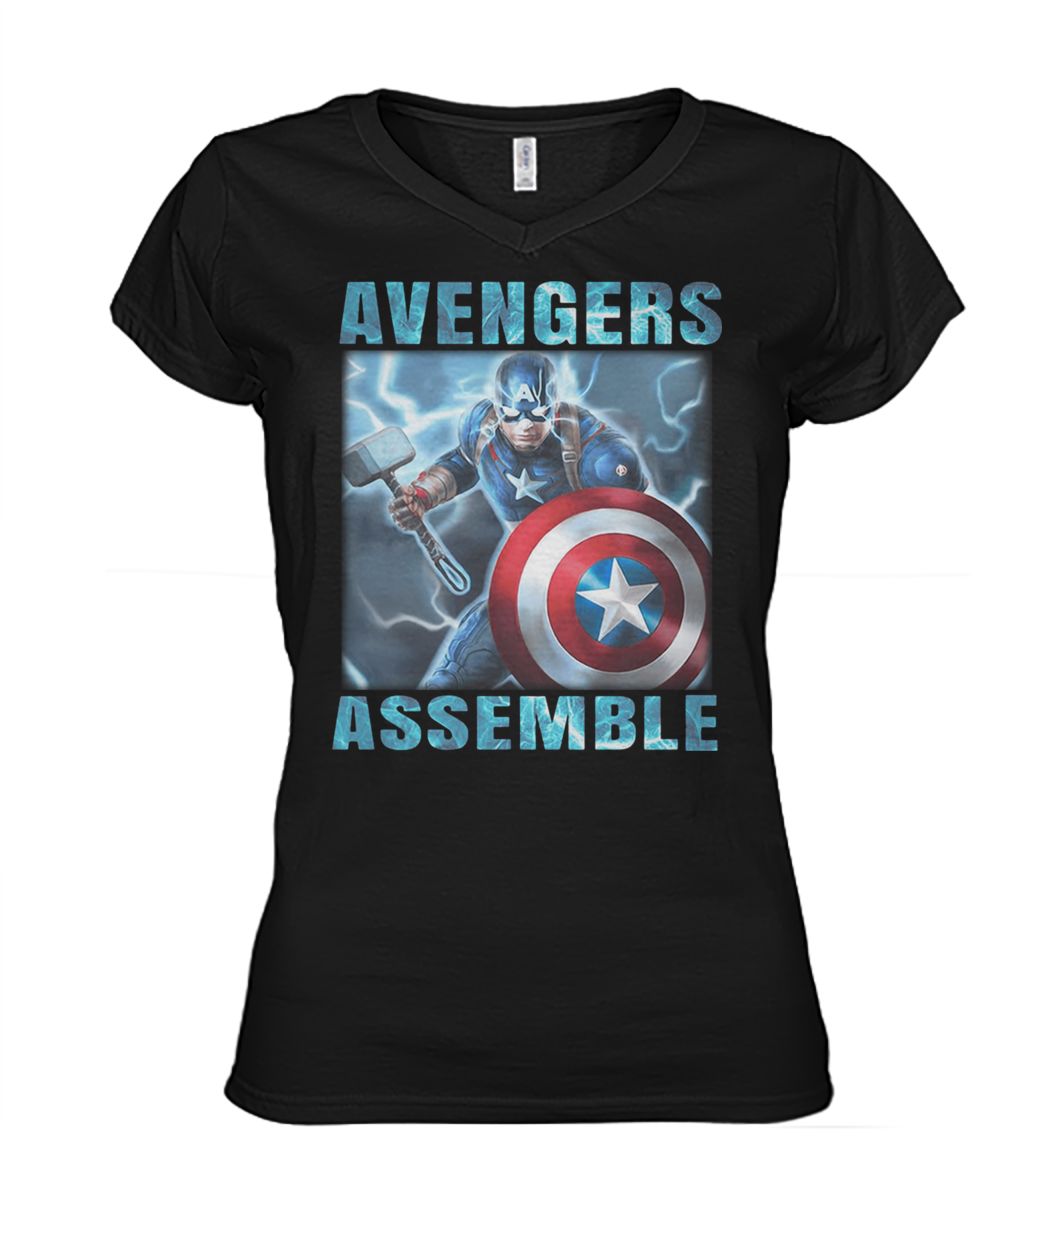 Captain America with Mjolnir Avengers assemble women's v-neck